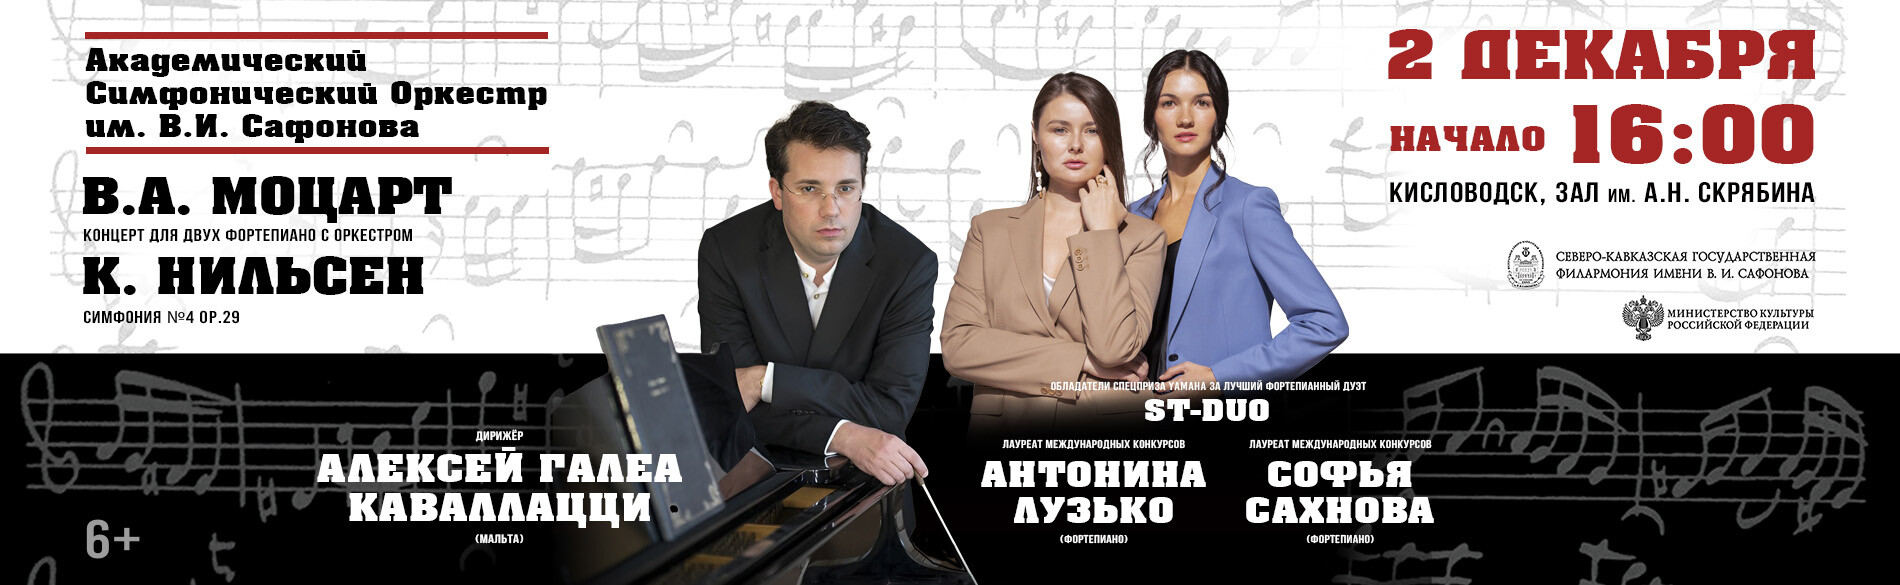 Международный конкурс пианистов пройдёт в 15-й раз в Ставропольском крае